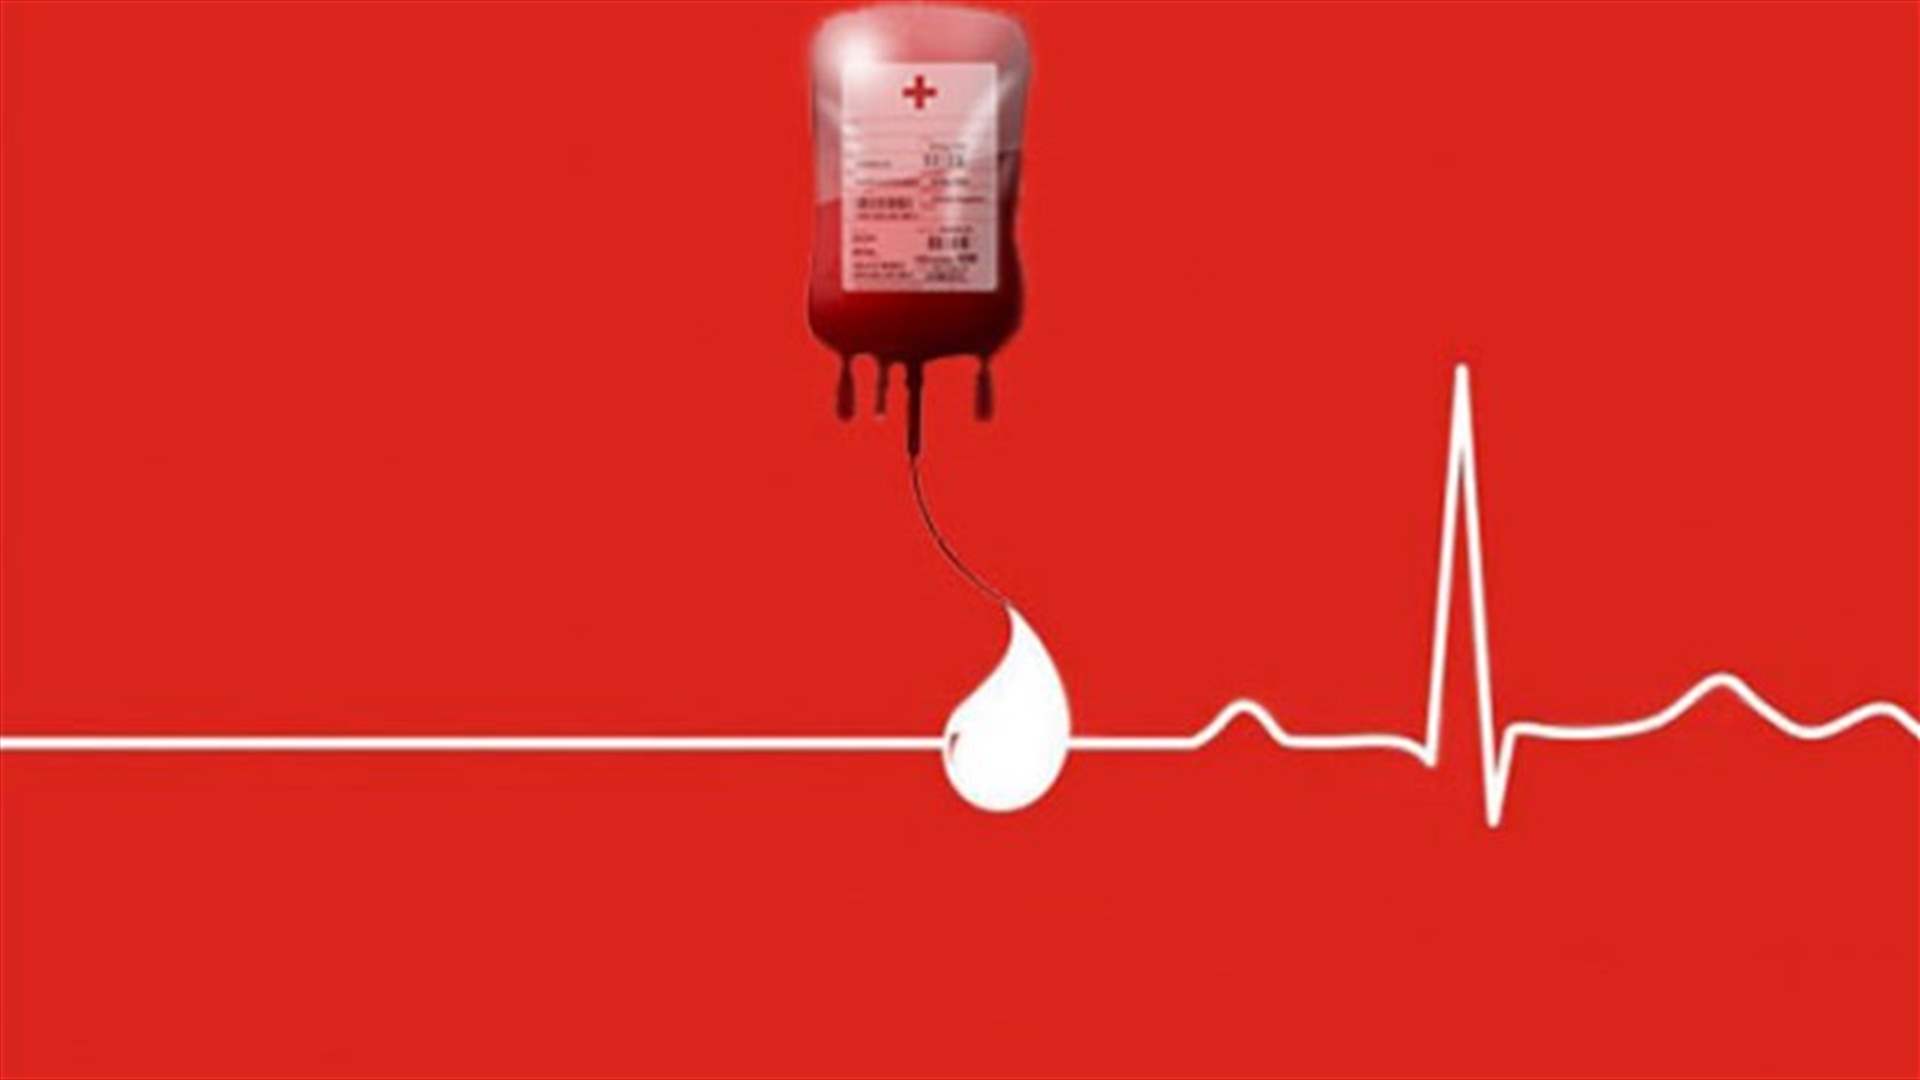 مريضة بحاجة ماسّة لوحدات دم من فئة O- في مستشفى الروم للتبرع الرجاء الاتصال على الرقم : 70486655